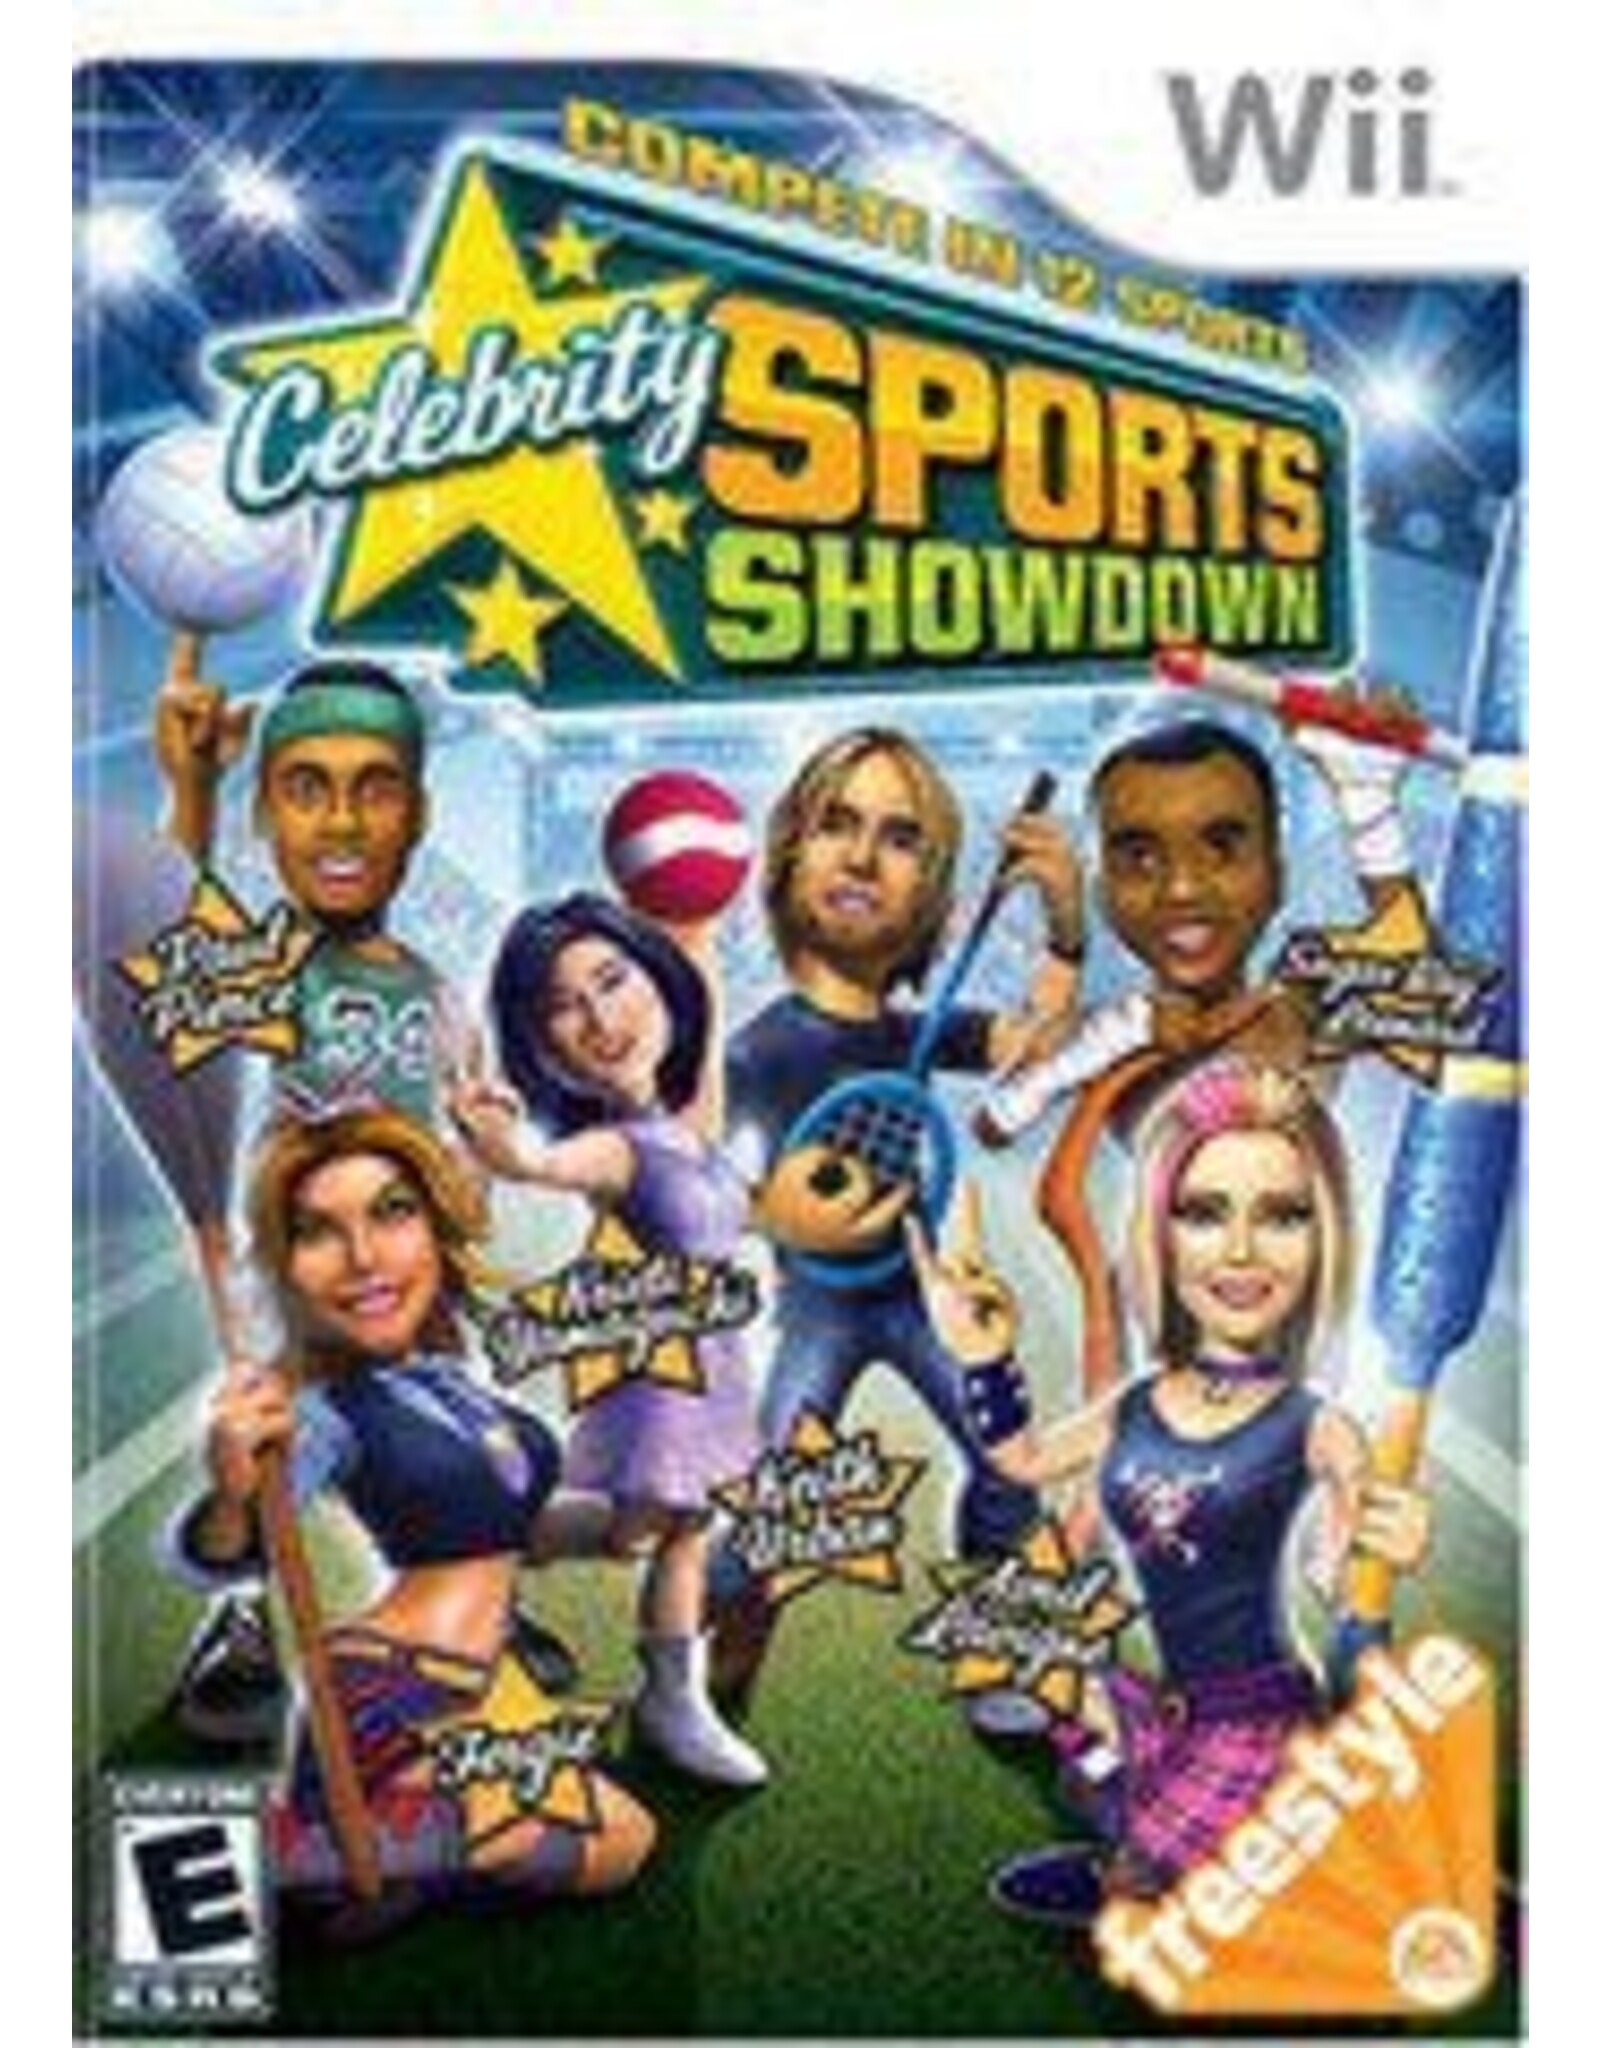 Wii Celebrity Sports Showdown (No Manual)